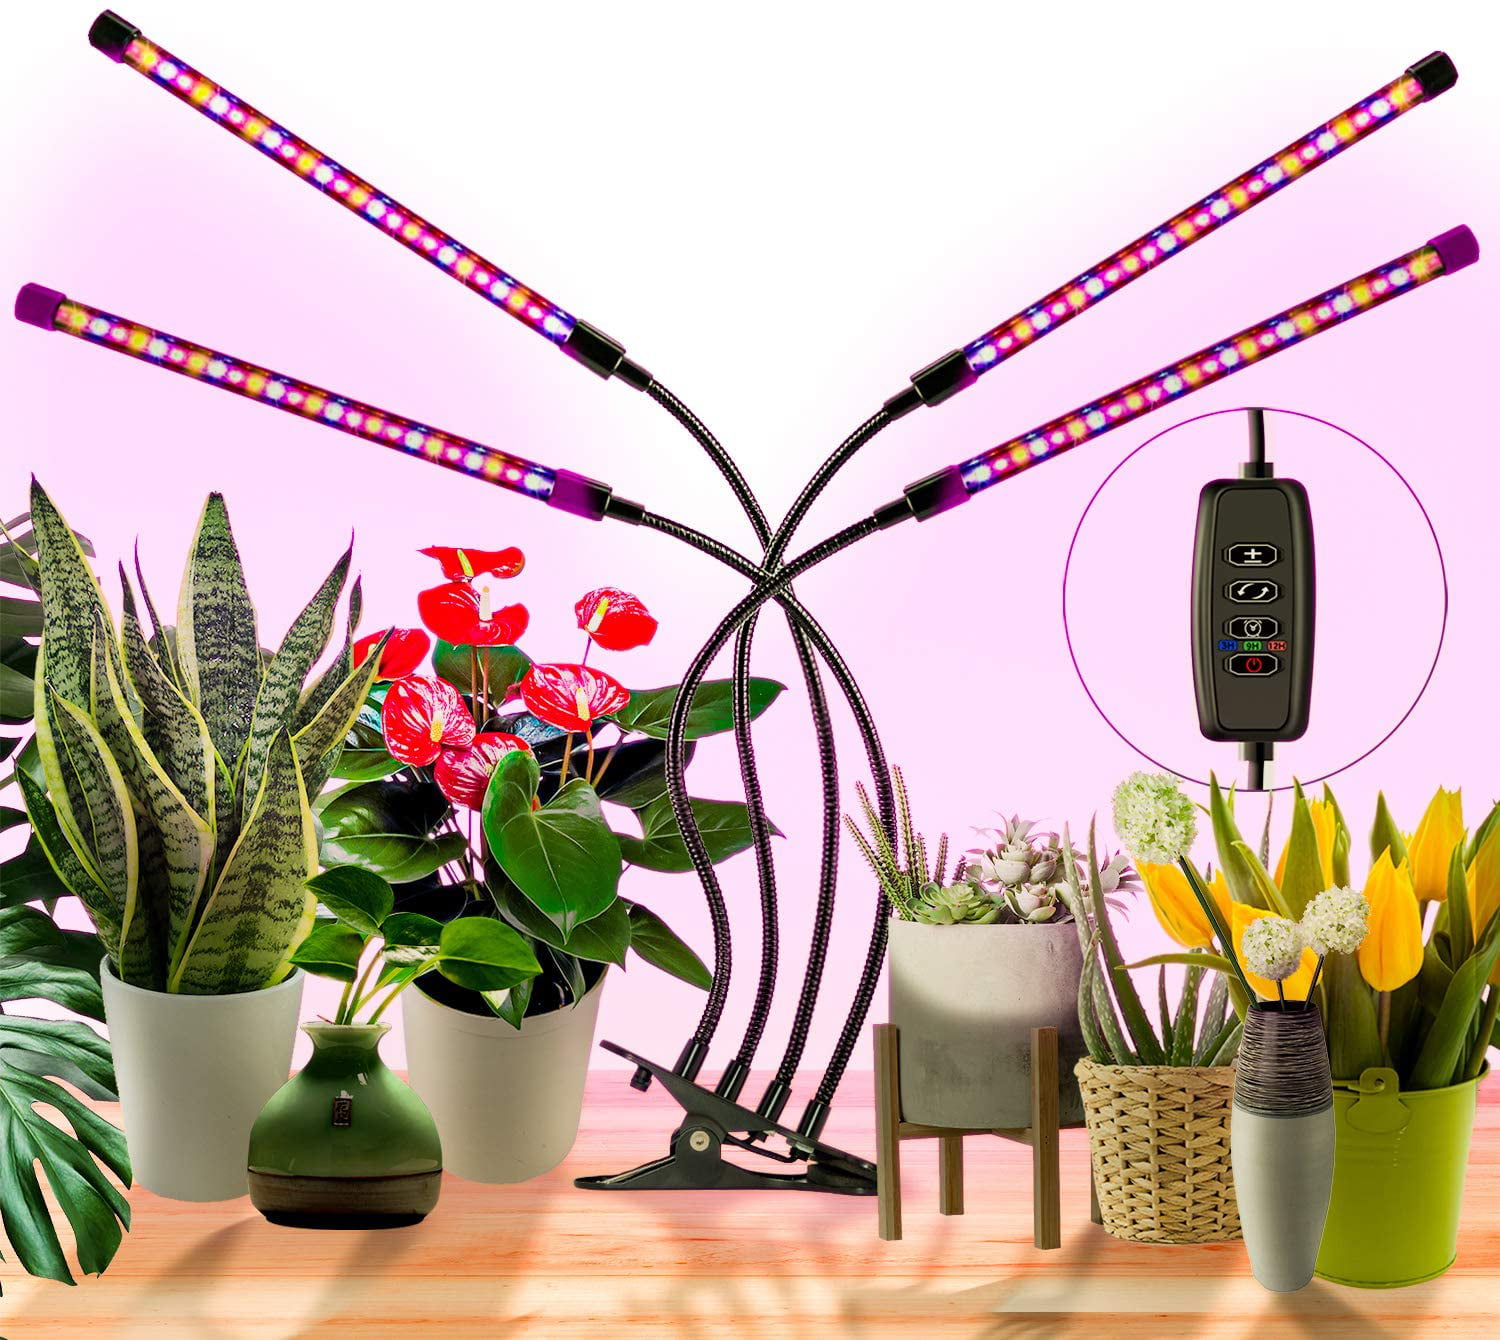 Full Spectrum Auto ON&Off Timer Indoor Plant Veg Flower LED Grow Light Strip 